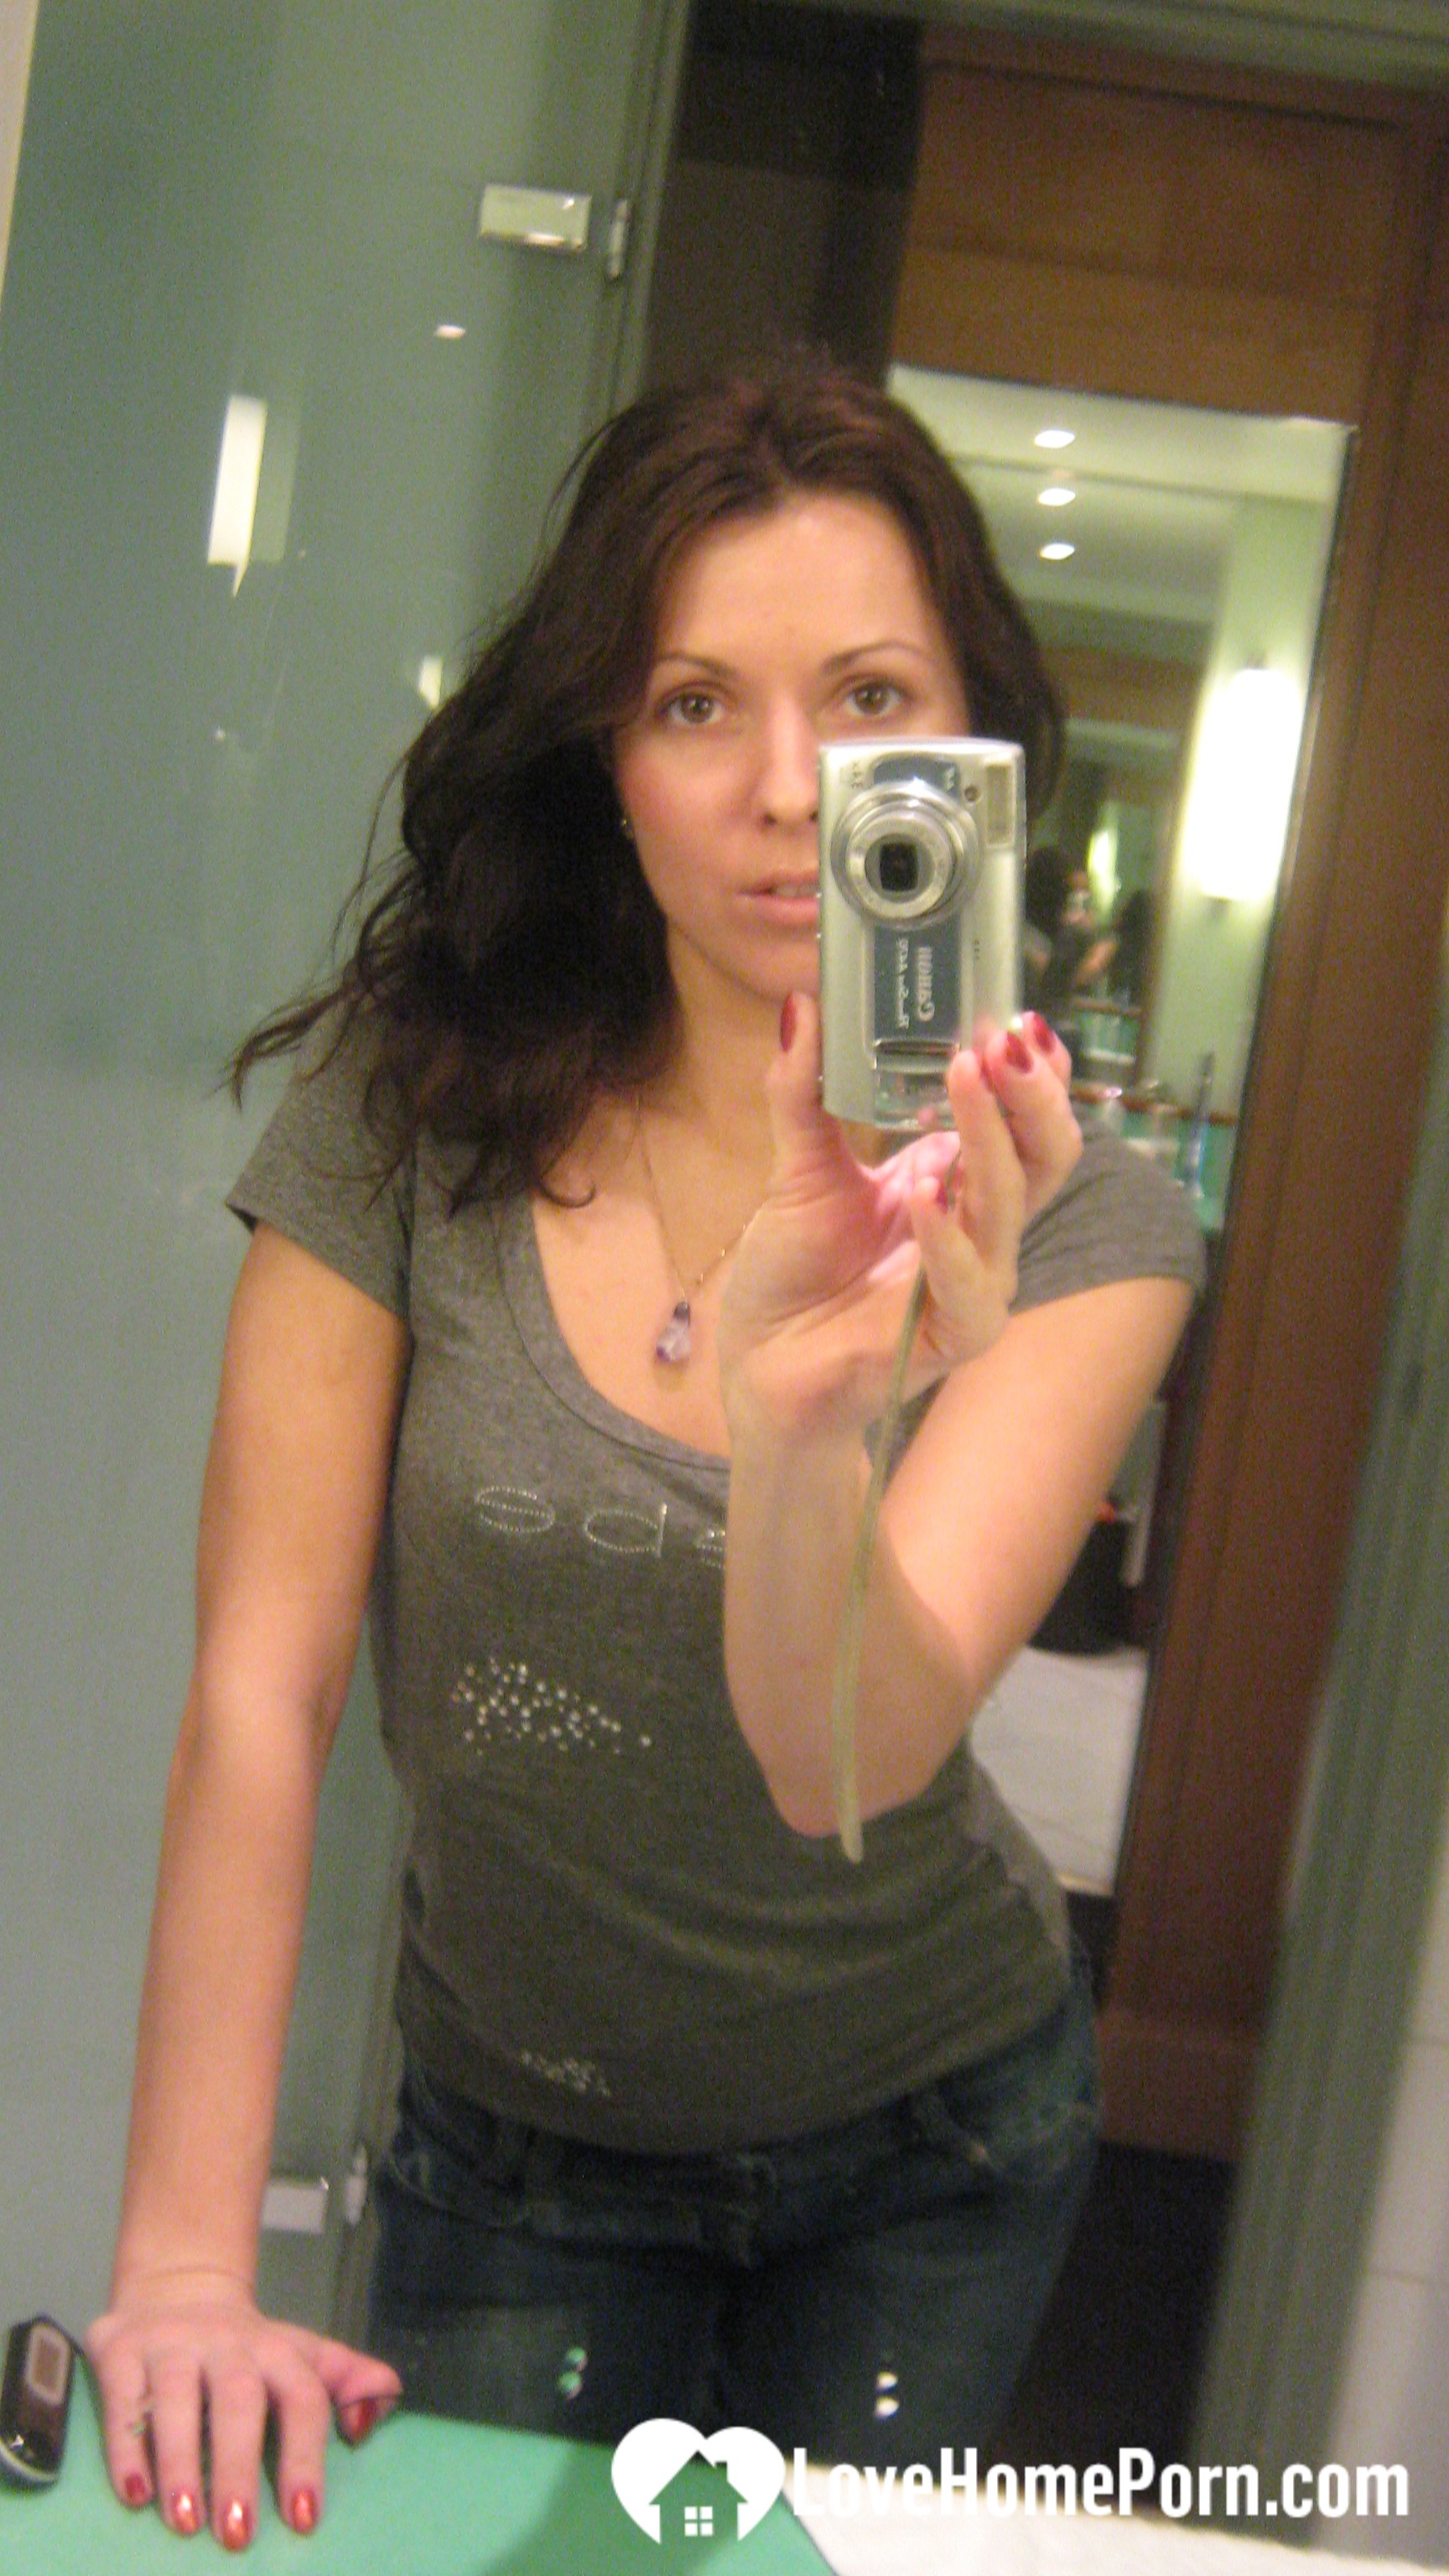 Innocent brunette teasing in her own bathroom